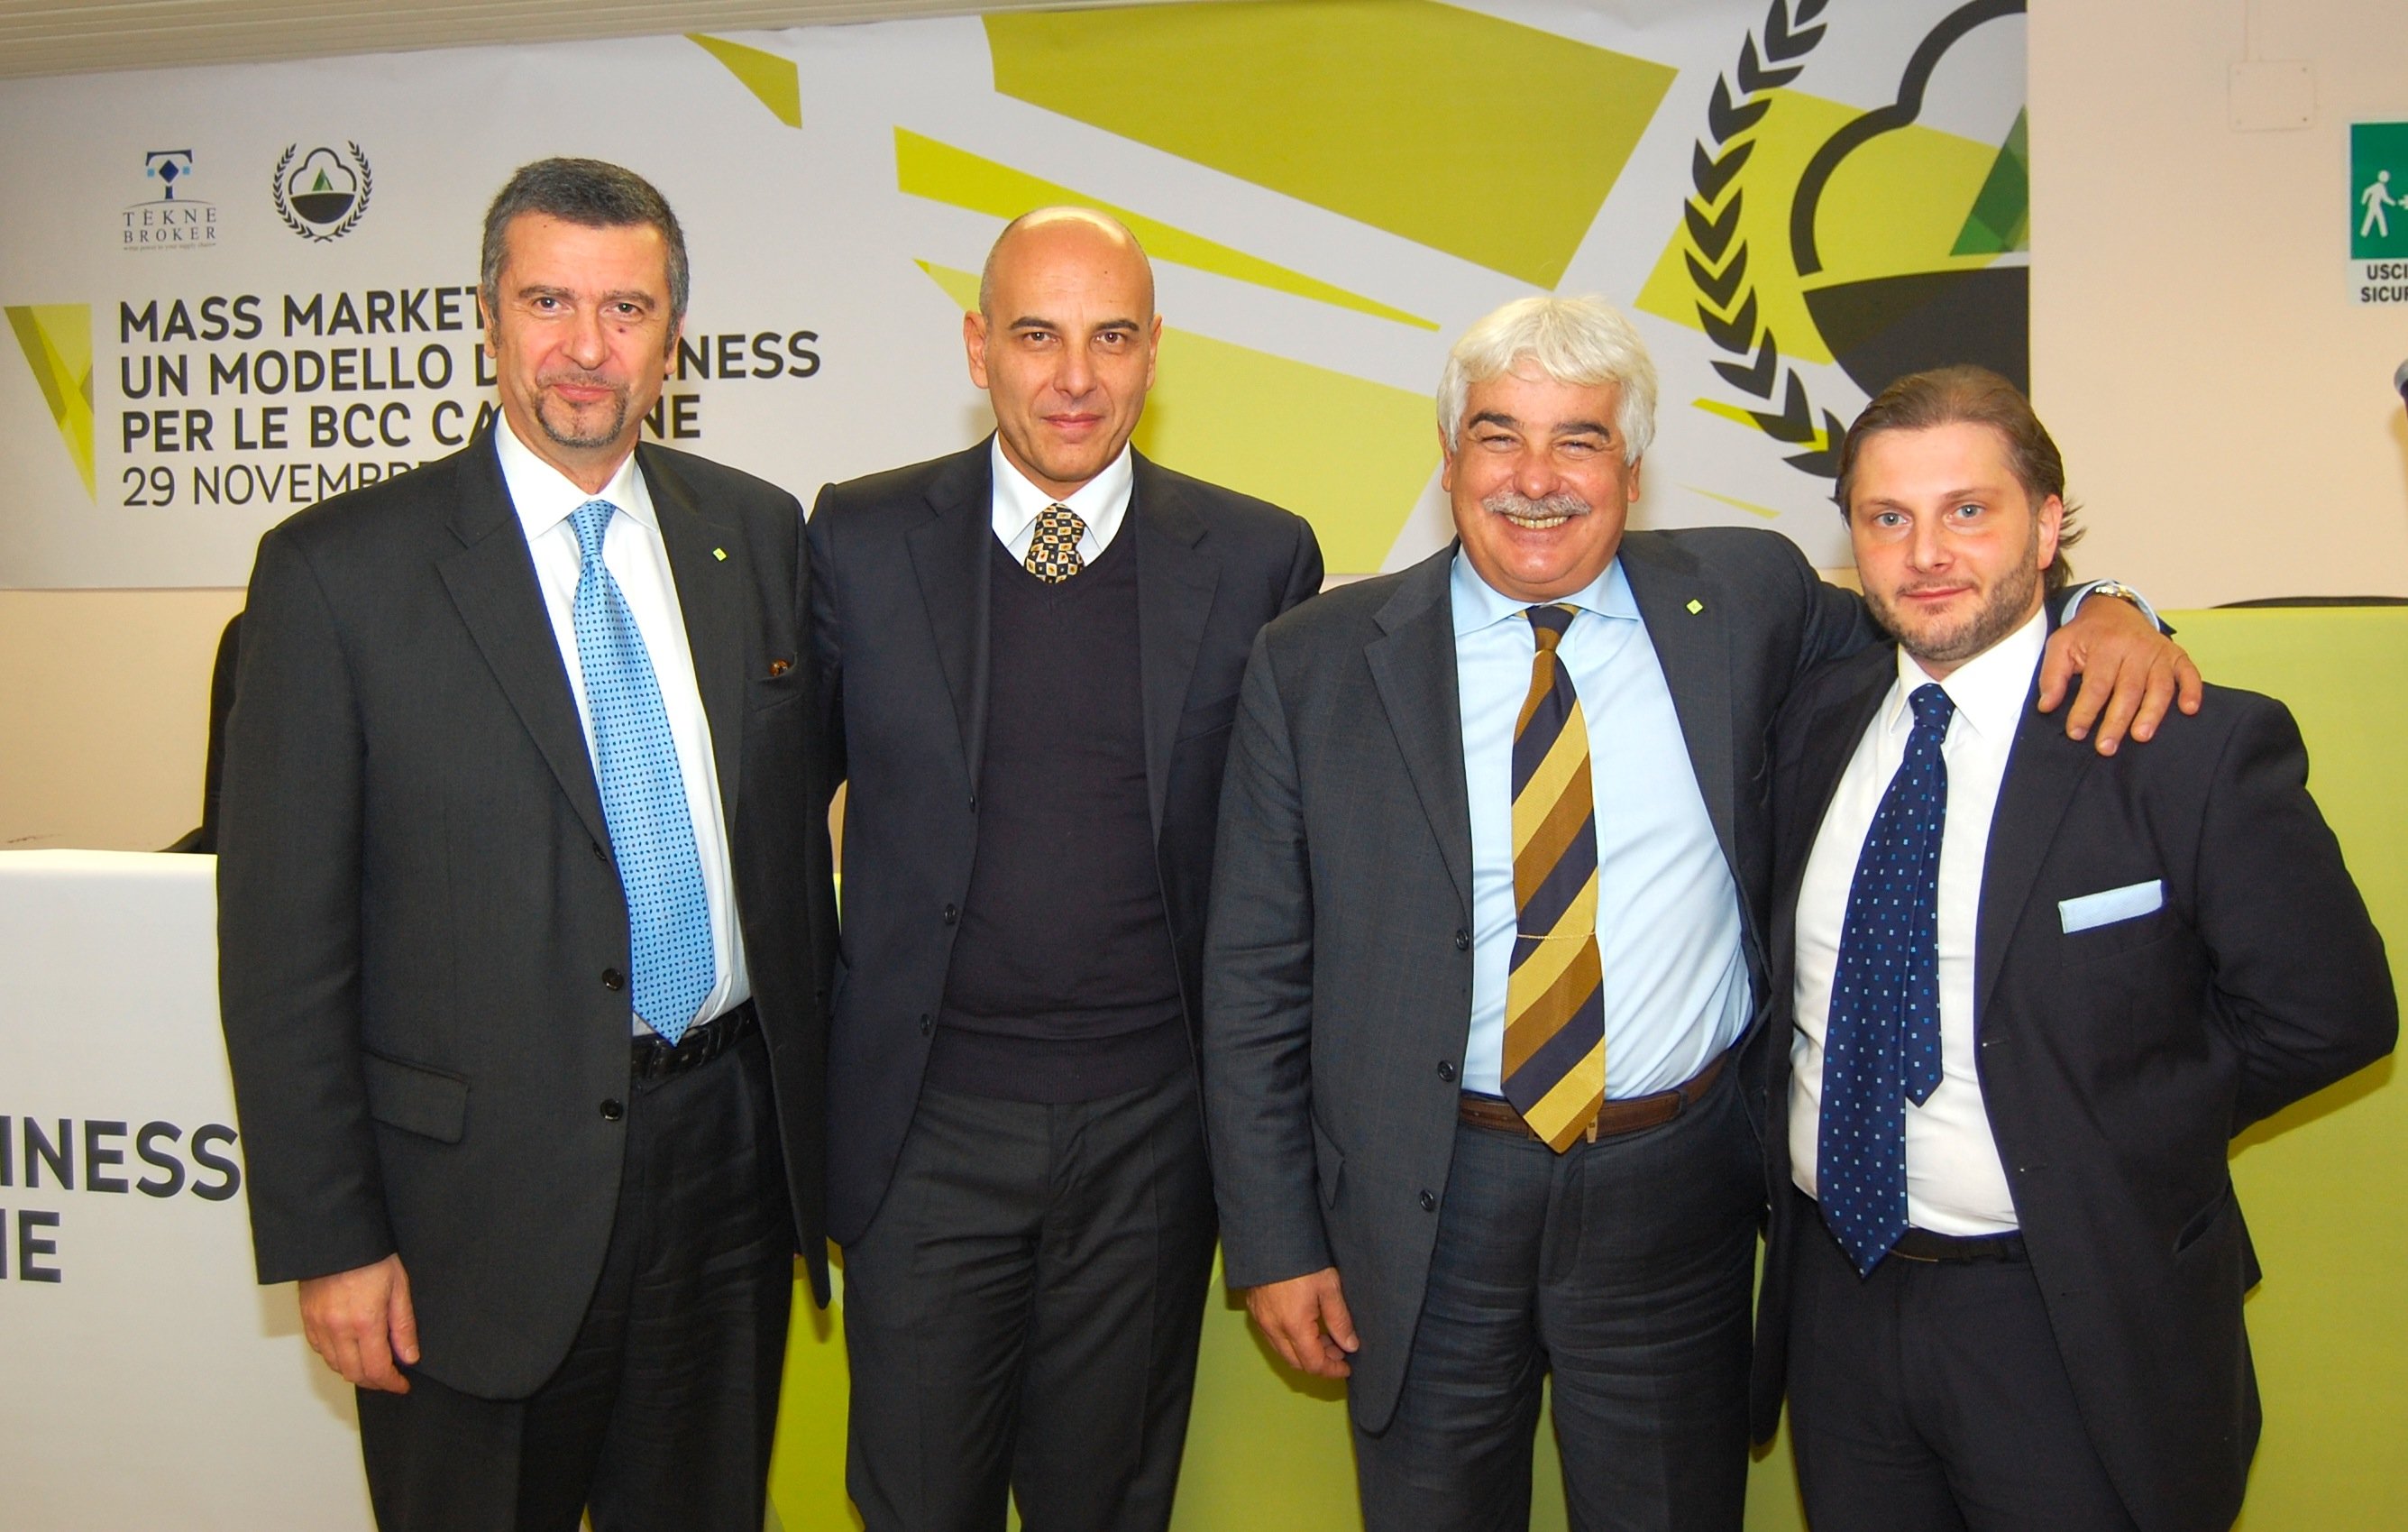 Da sinistra a destra: Dottor Francesco Ilgrande - ACE, Signor Luigi Stabile - Tékne Broker, Dottor Fabrizio Capardon - ACE, Dottor Pierpaolo La Via - Tékne Broker